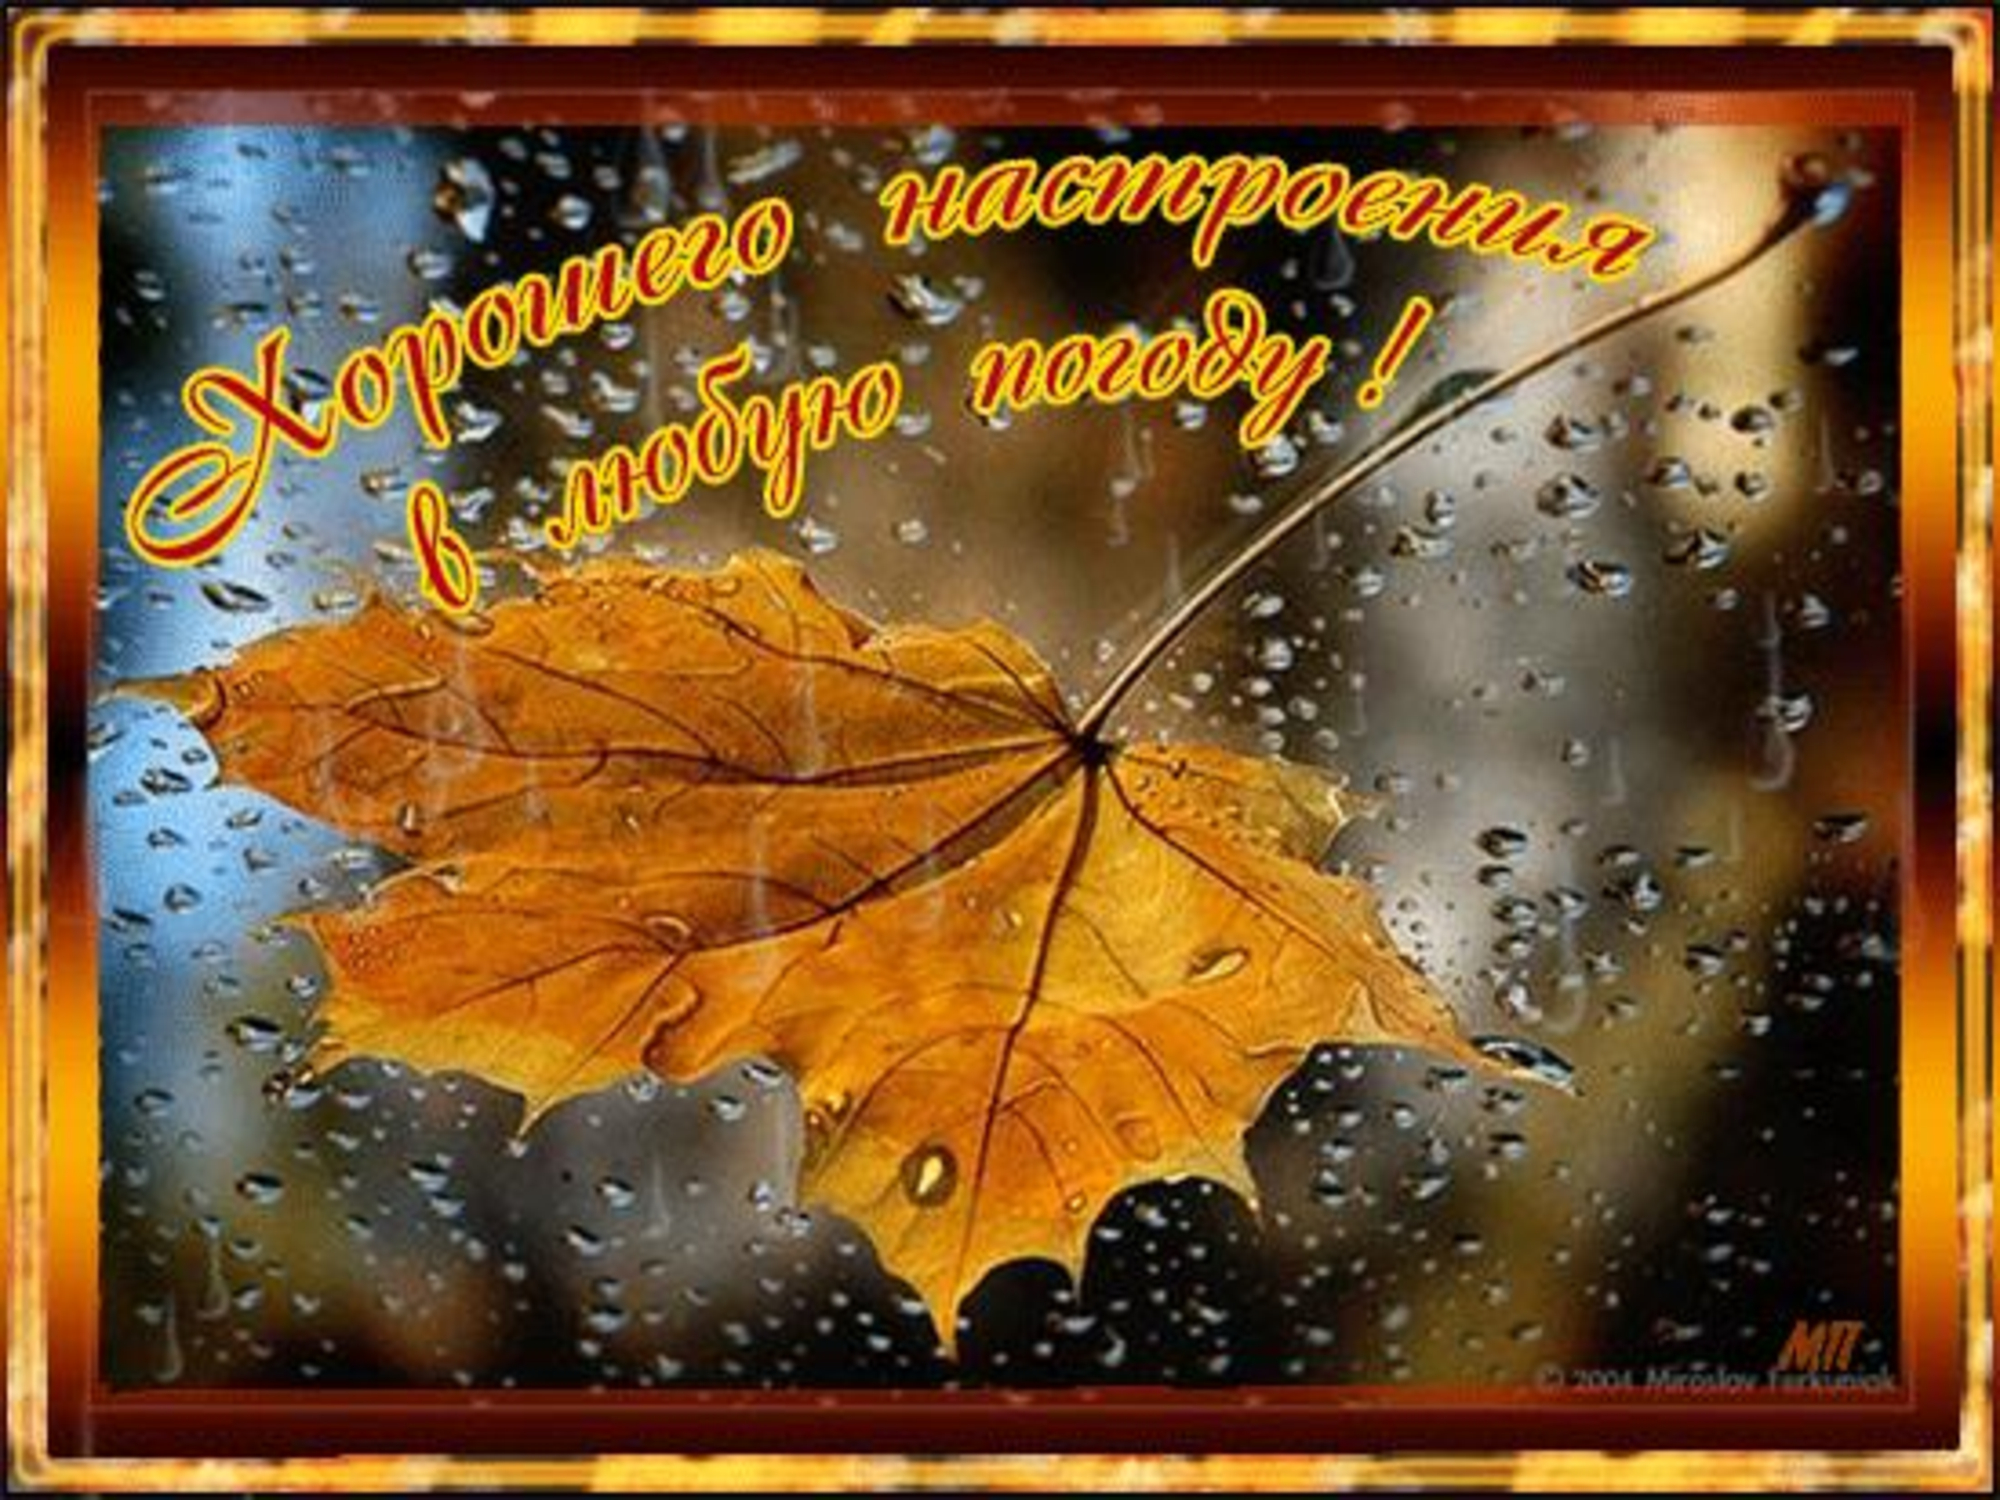 Осенью мы лучше видим и глазом. Осеннего настроения в любую погоду. Открытки хорошего настроения в любую погоду осенью. Хорошего настроения дождливой осенью. Открытка хорошего настроения в любую погоду осенняя.